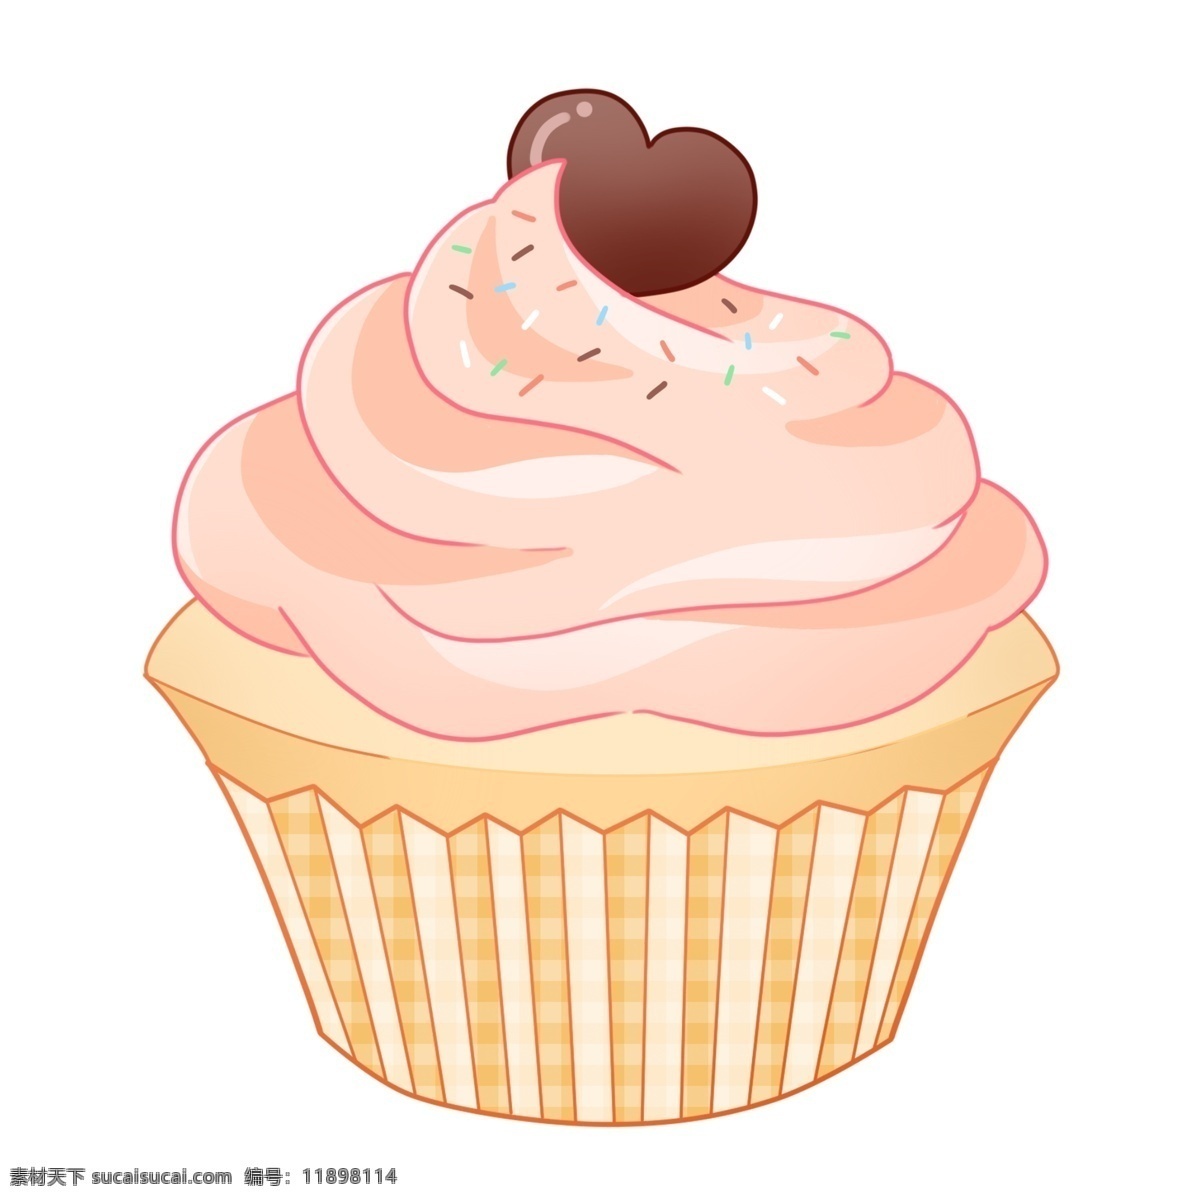 粉色 纸杯 蛋糕 插画 粉色纸杯蛋糕 粉色奶油 心形巧克力 美味的蛋糕 甜品 甜食 食物 食品 蛋糕插画